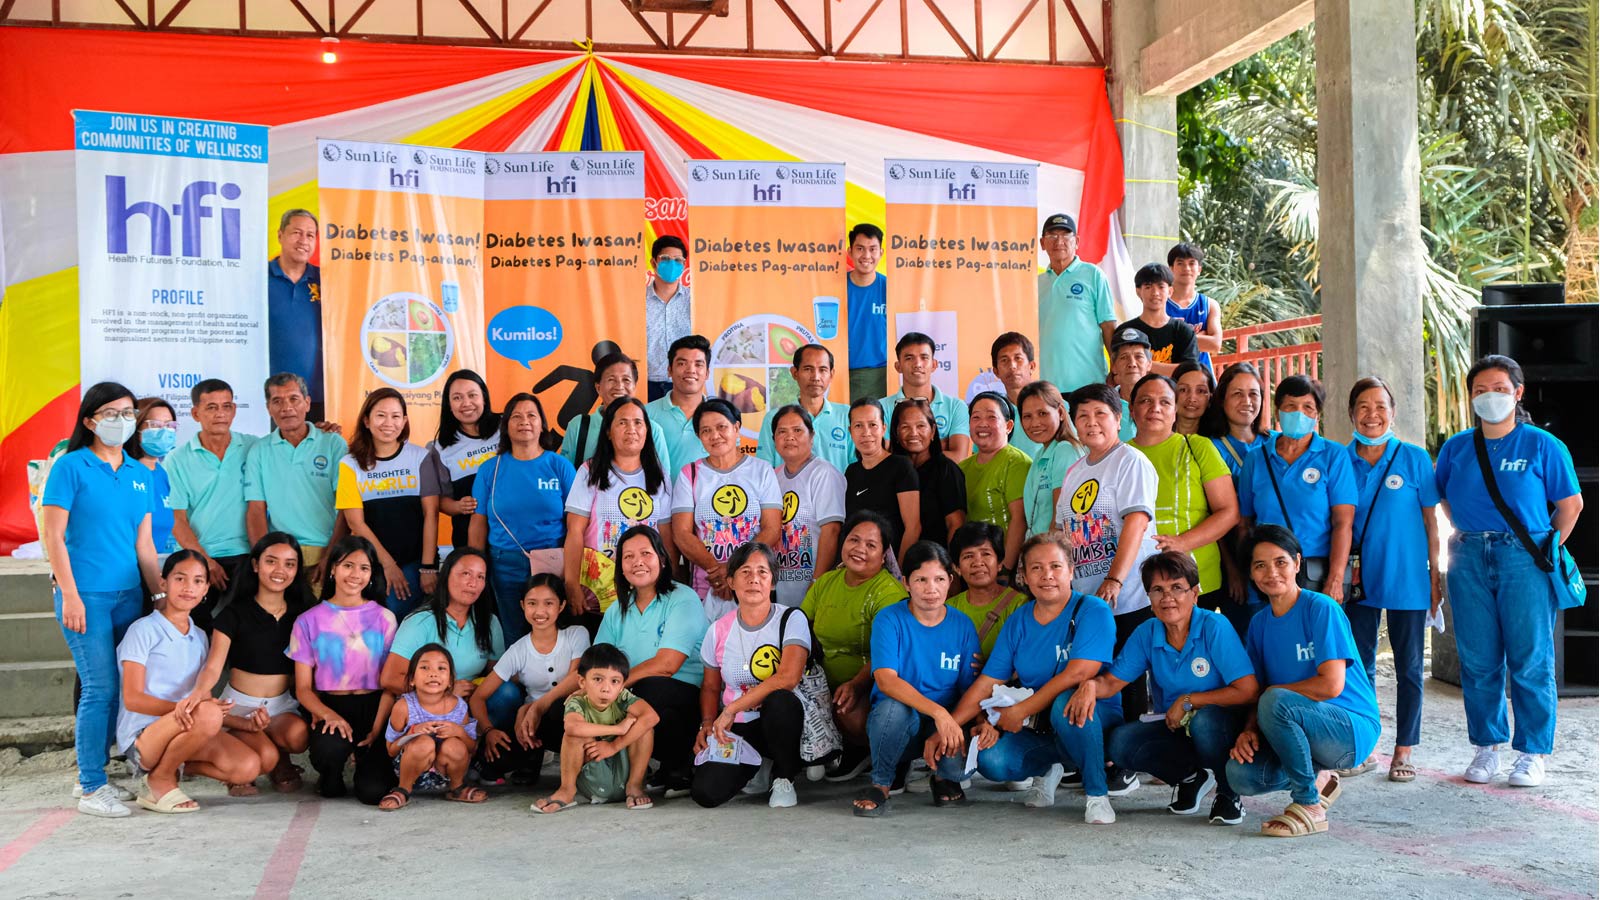 Attendees of Diabetes Iwasan! Diabetes Pag-aralan! campaign in Barangay Pansol